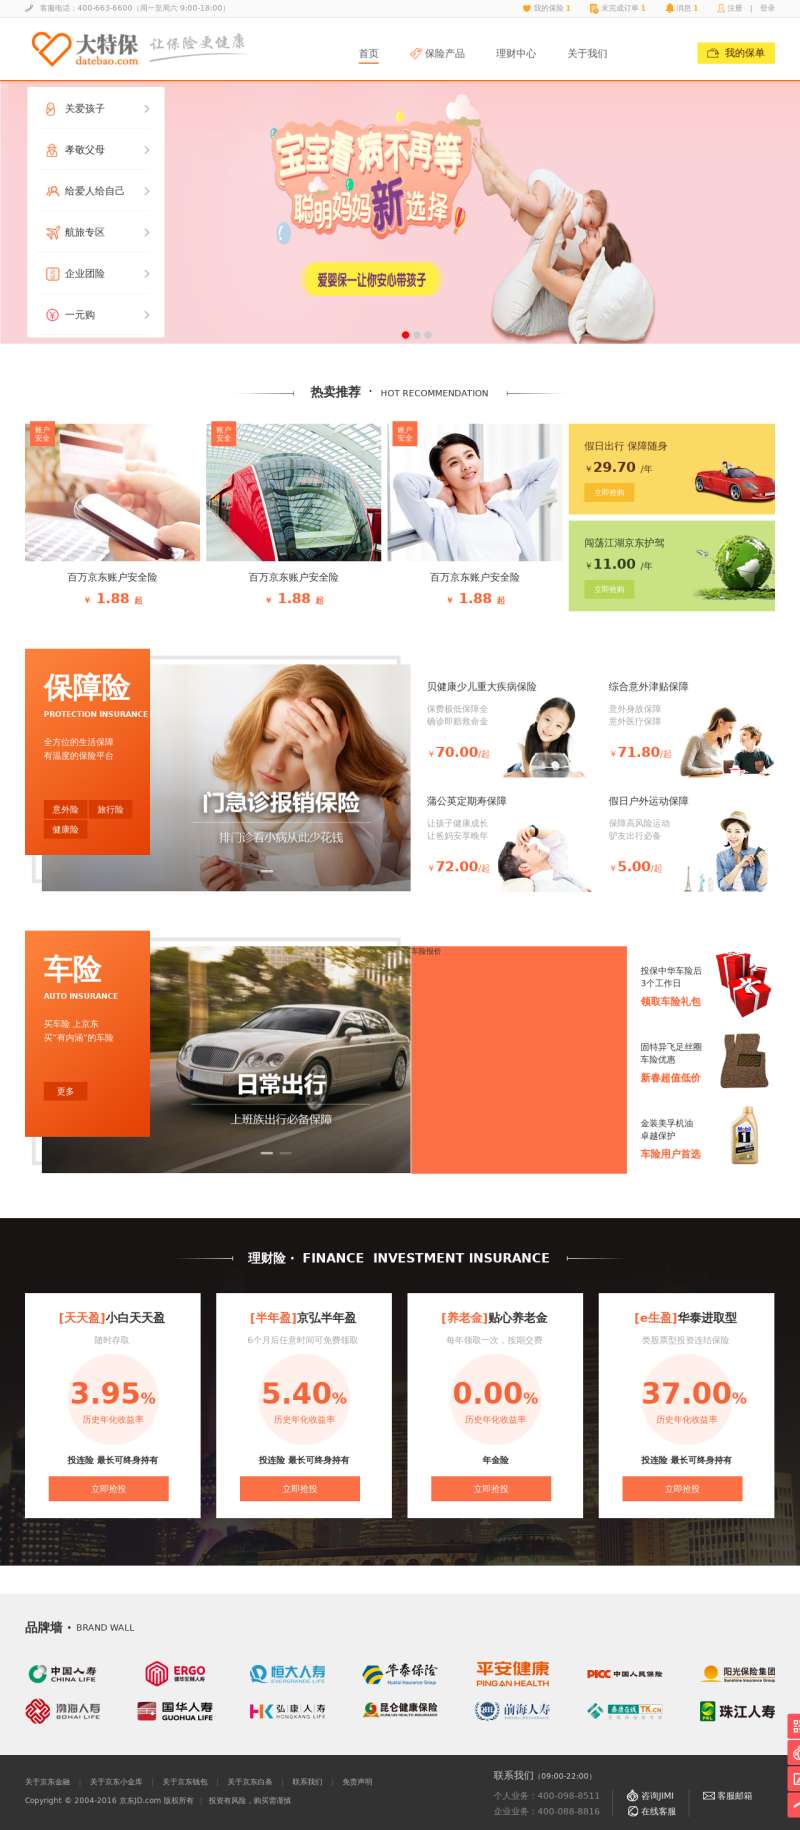 橙色的大特保保险商城网站html模板